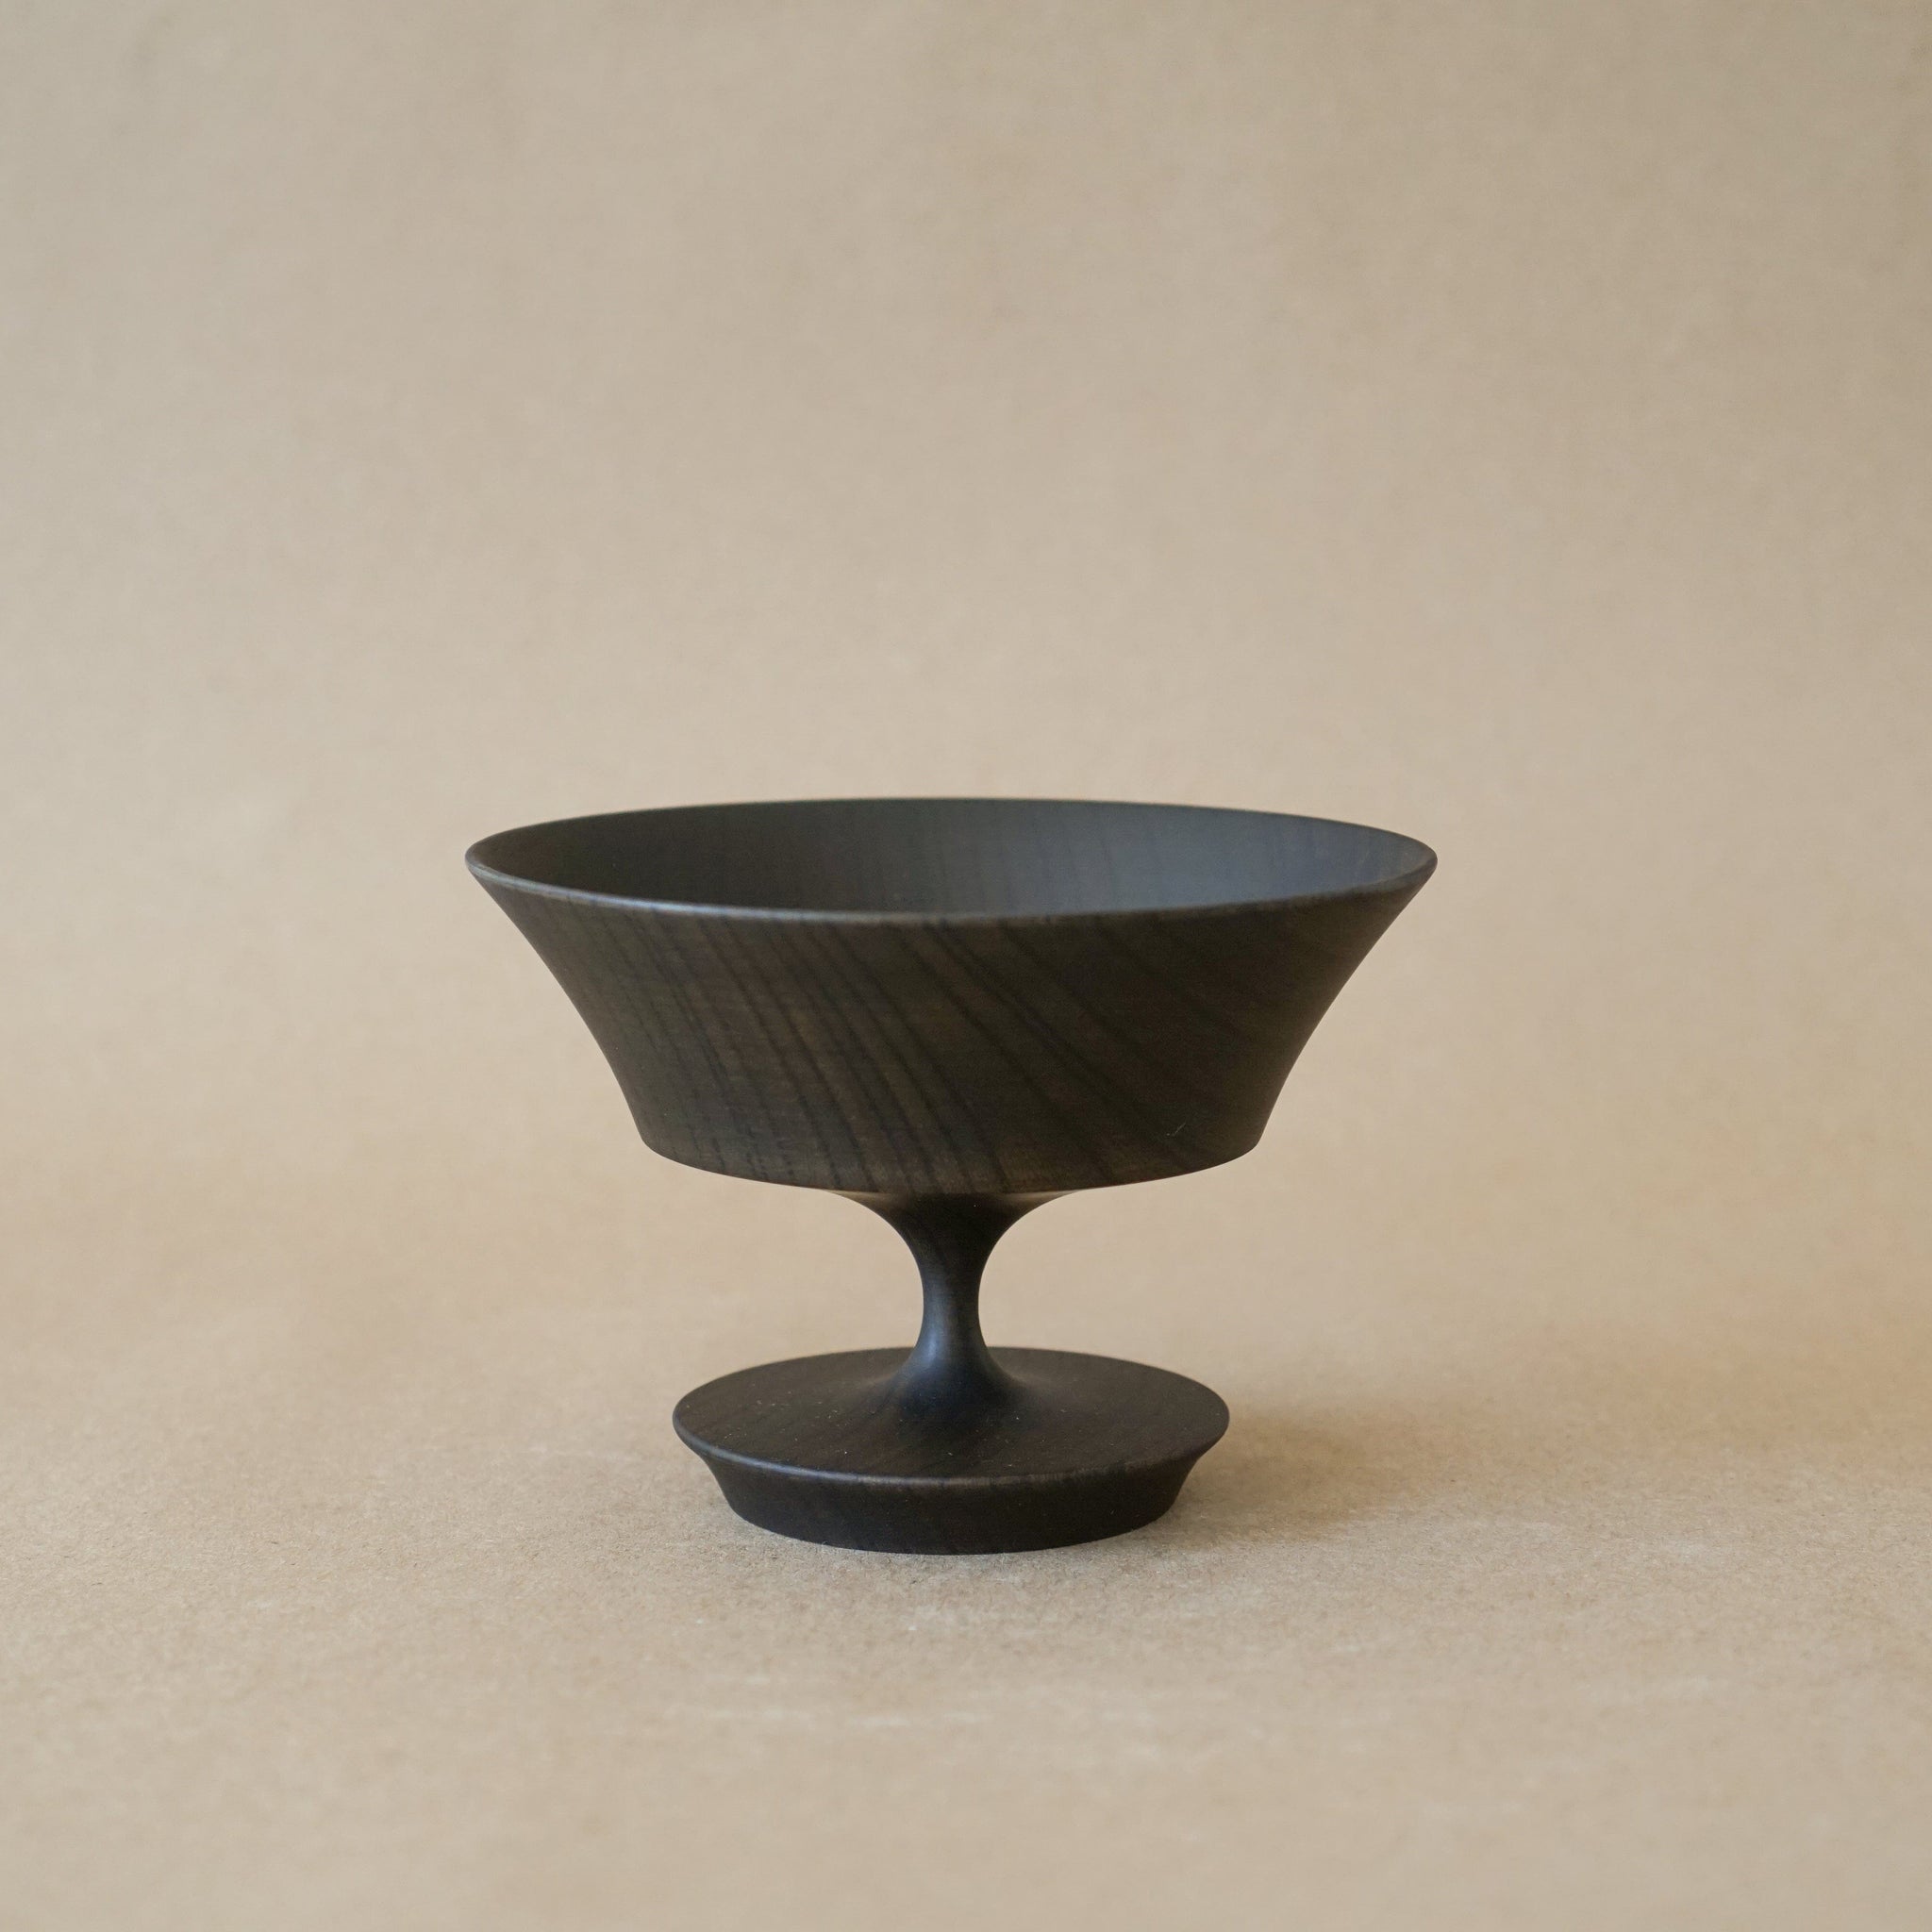 Morihata Decor Sinafu Small Black Stand Bowl